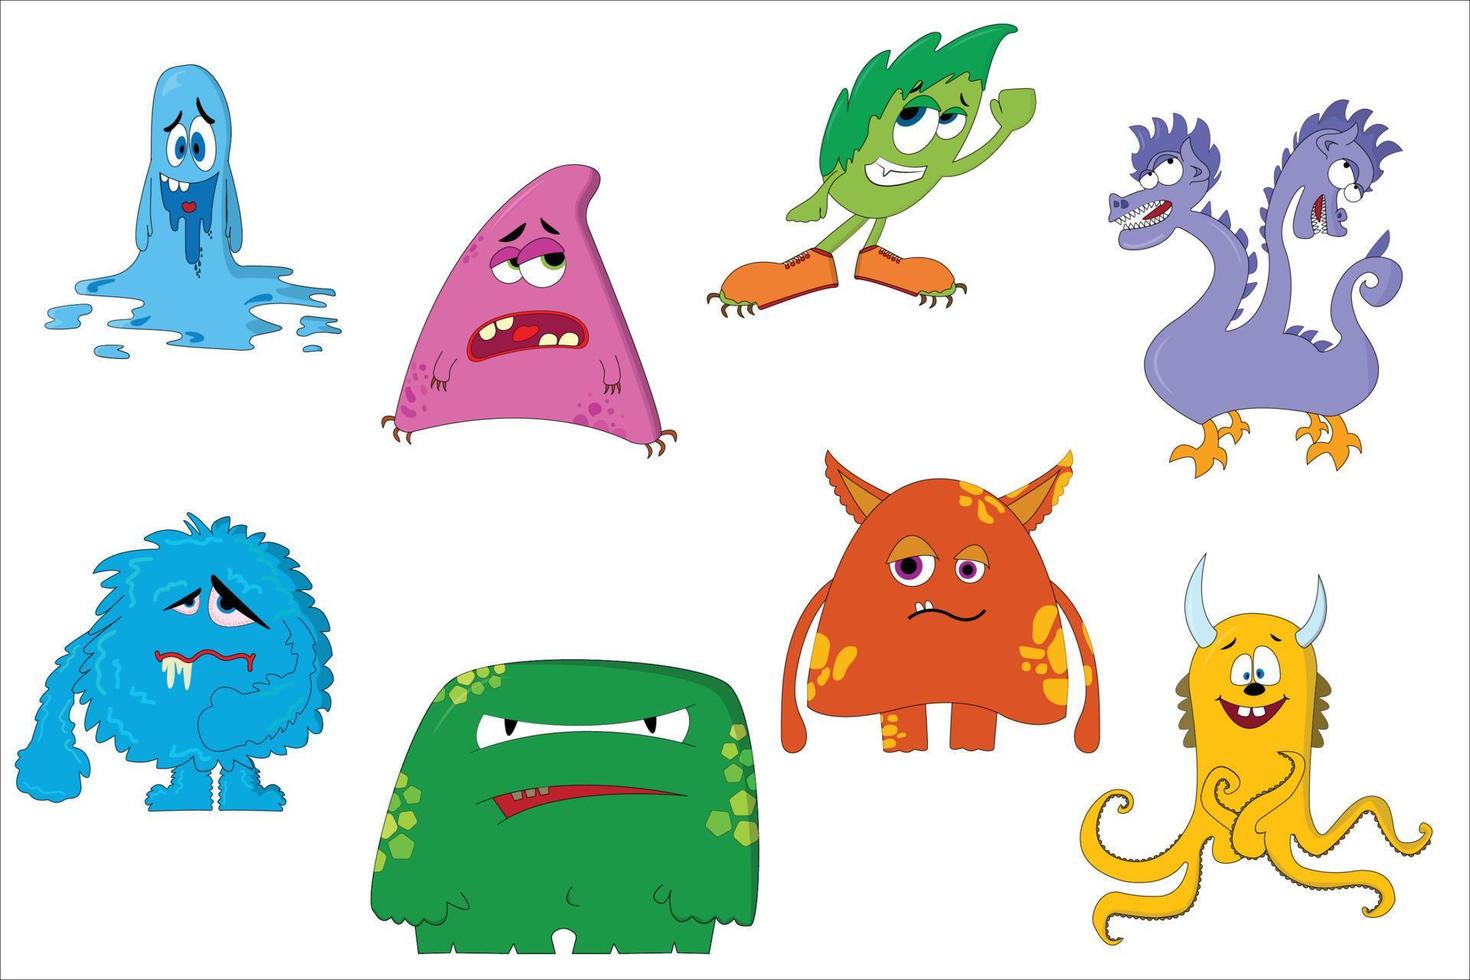 criaturas engraçadas dos desenhos animados. conjunto de monstros